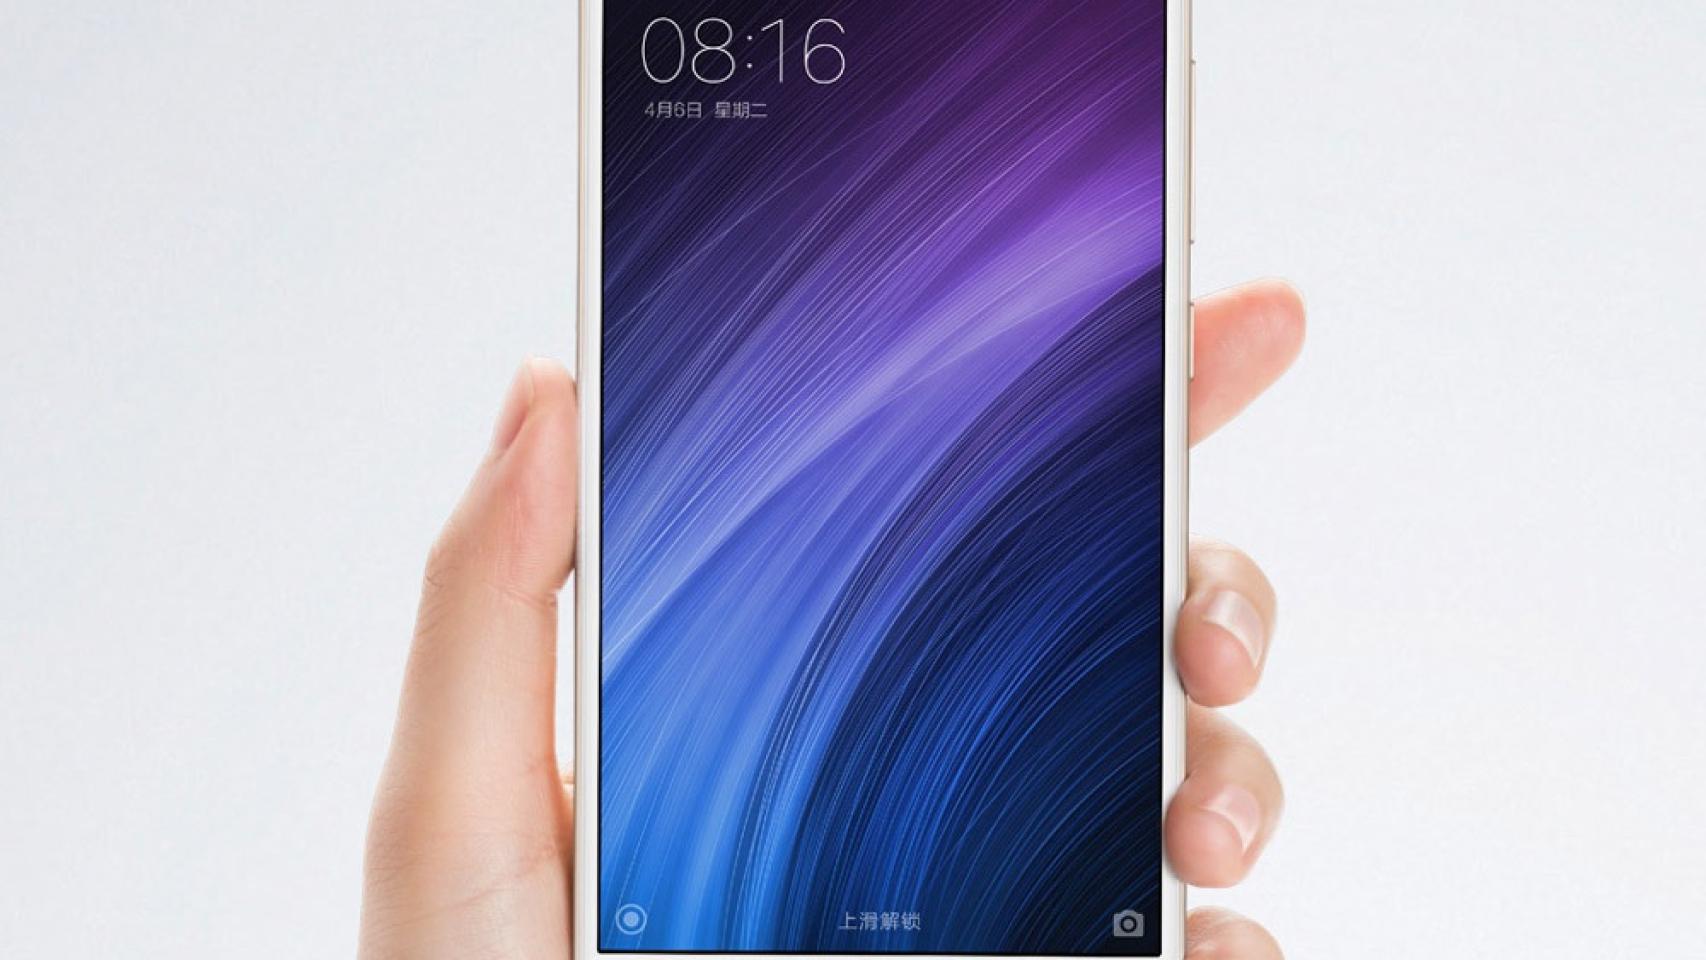 Ofertón: Xiaomi Redmi 4A por 87 euros